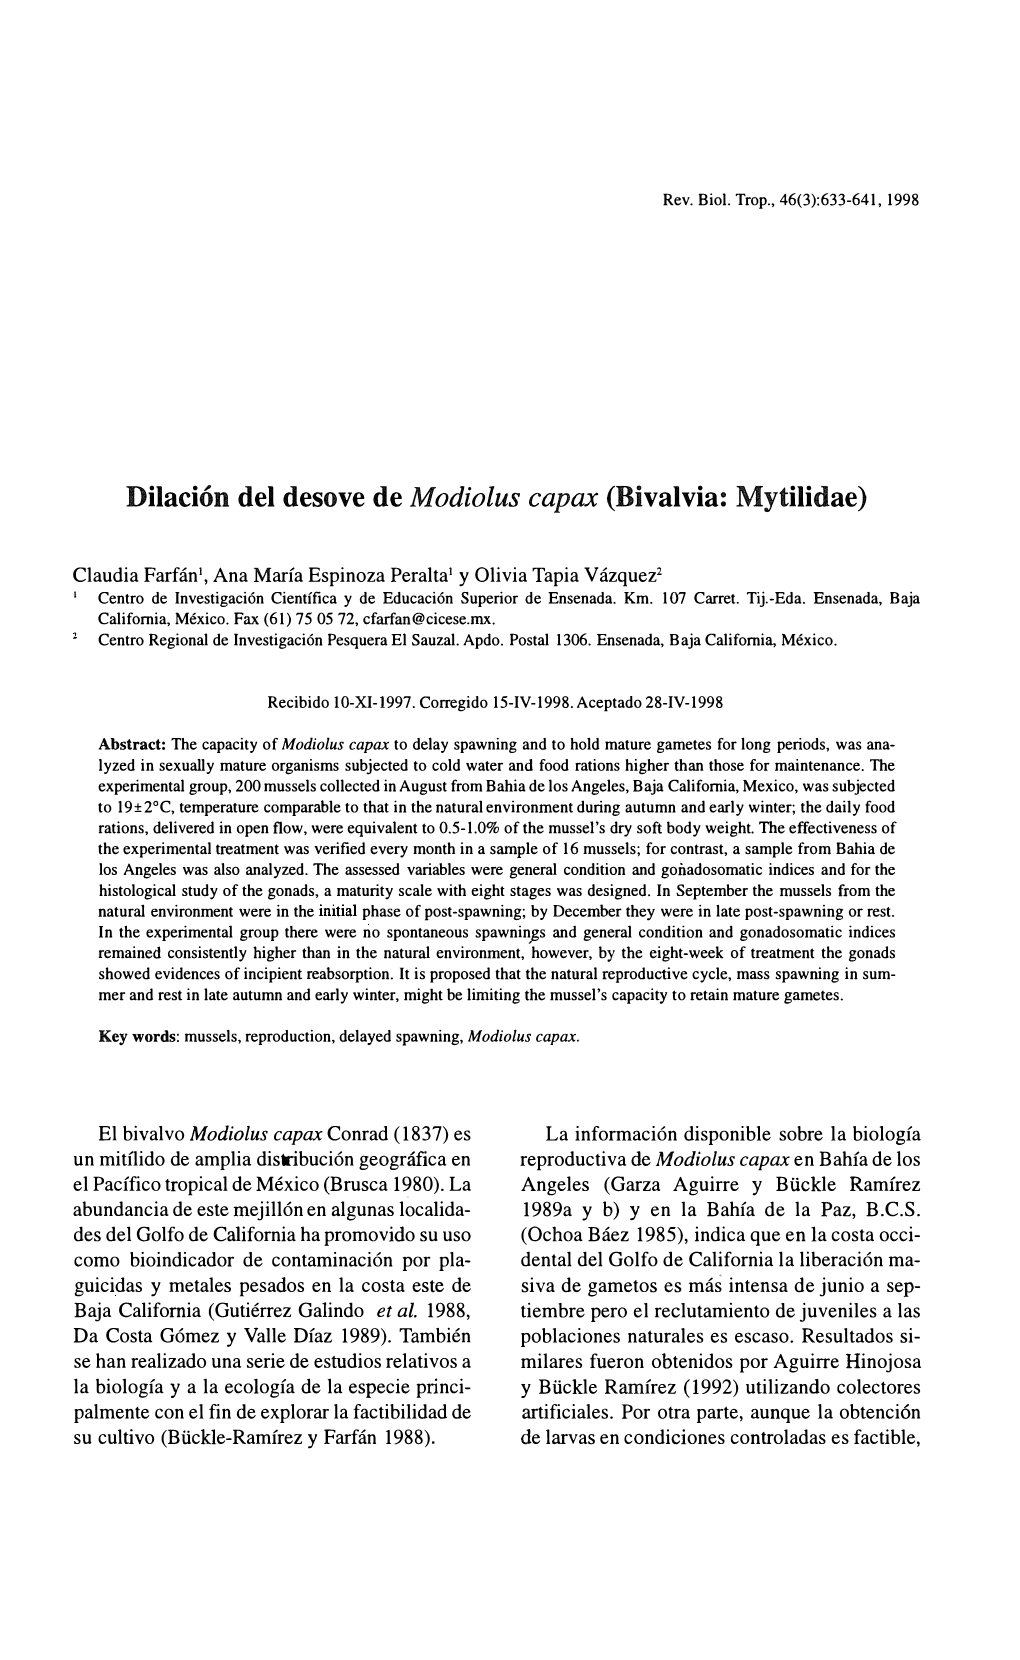 Dilación Del Desove De Modiolus Capax (Bivalvia: Mytilidae)